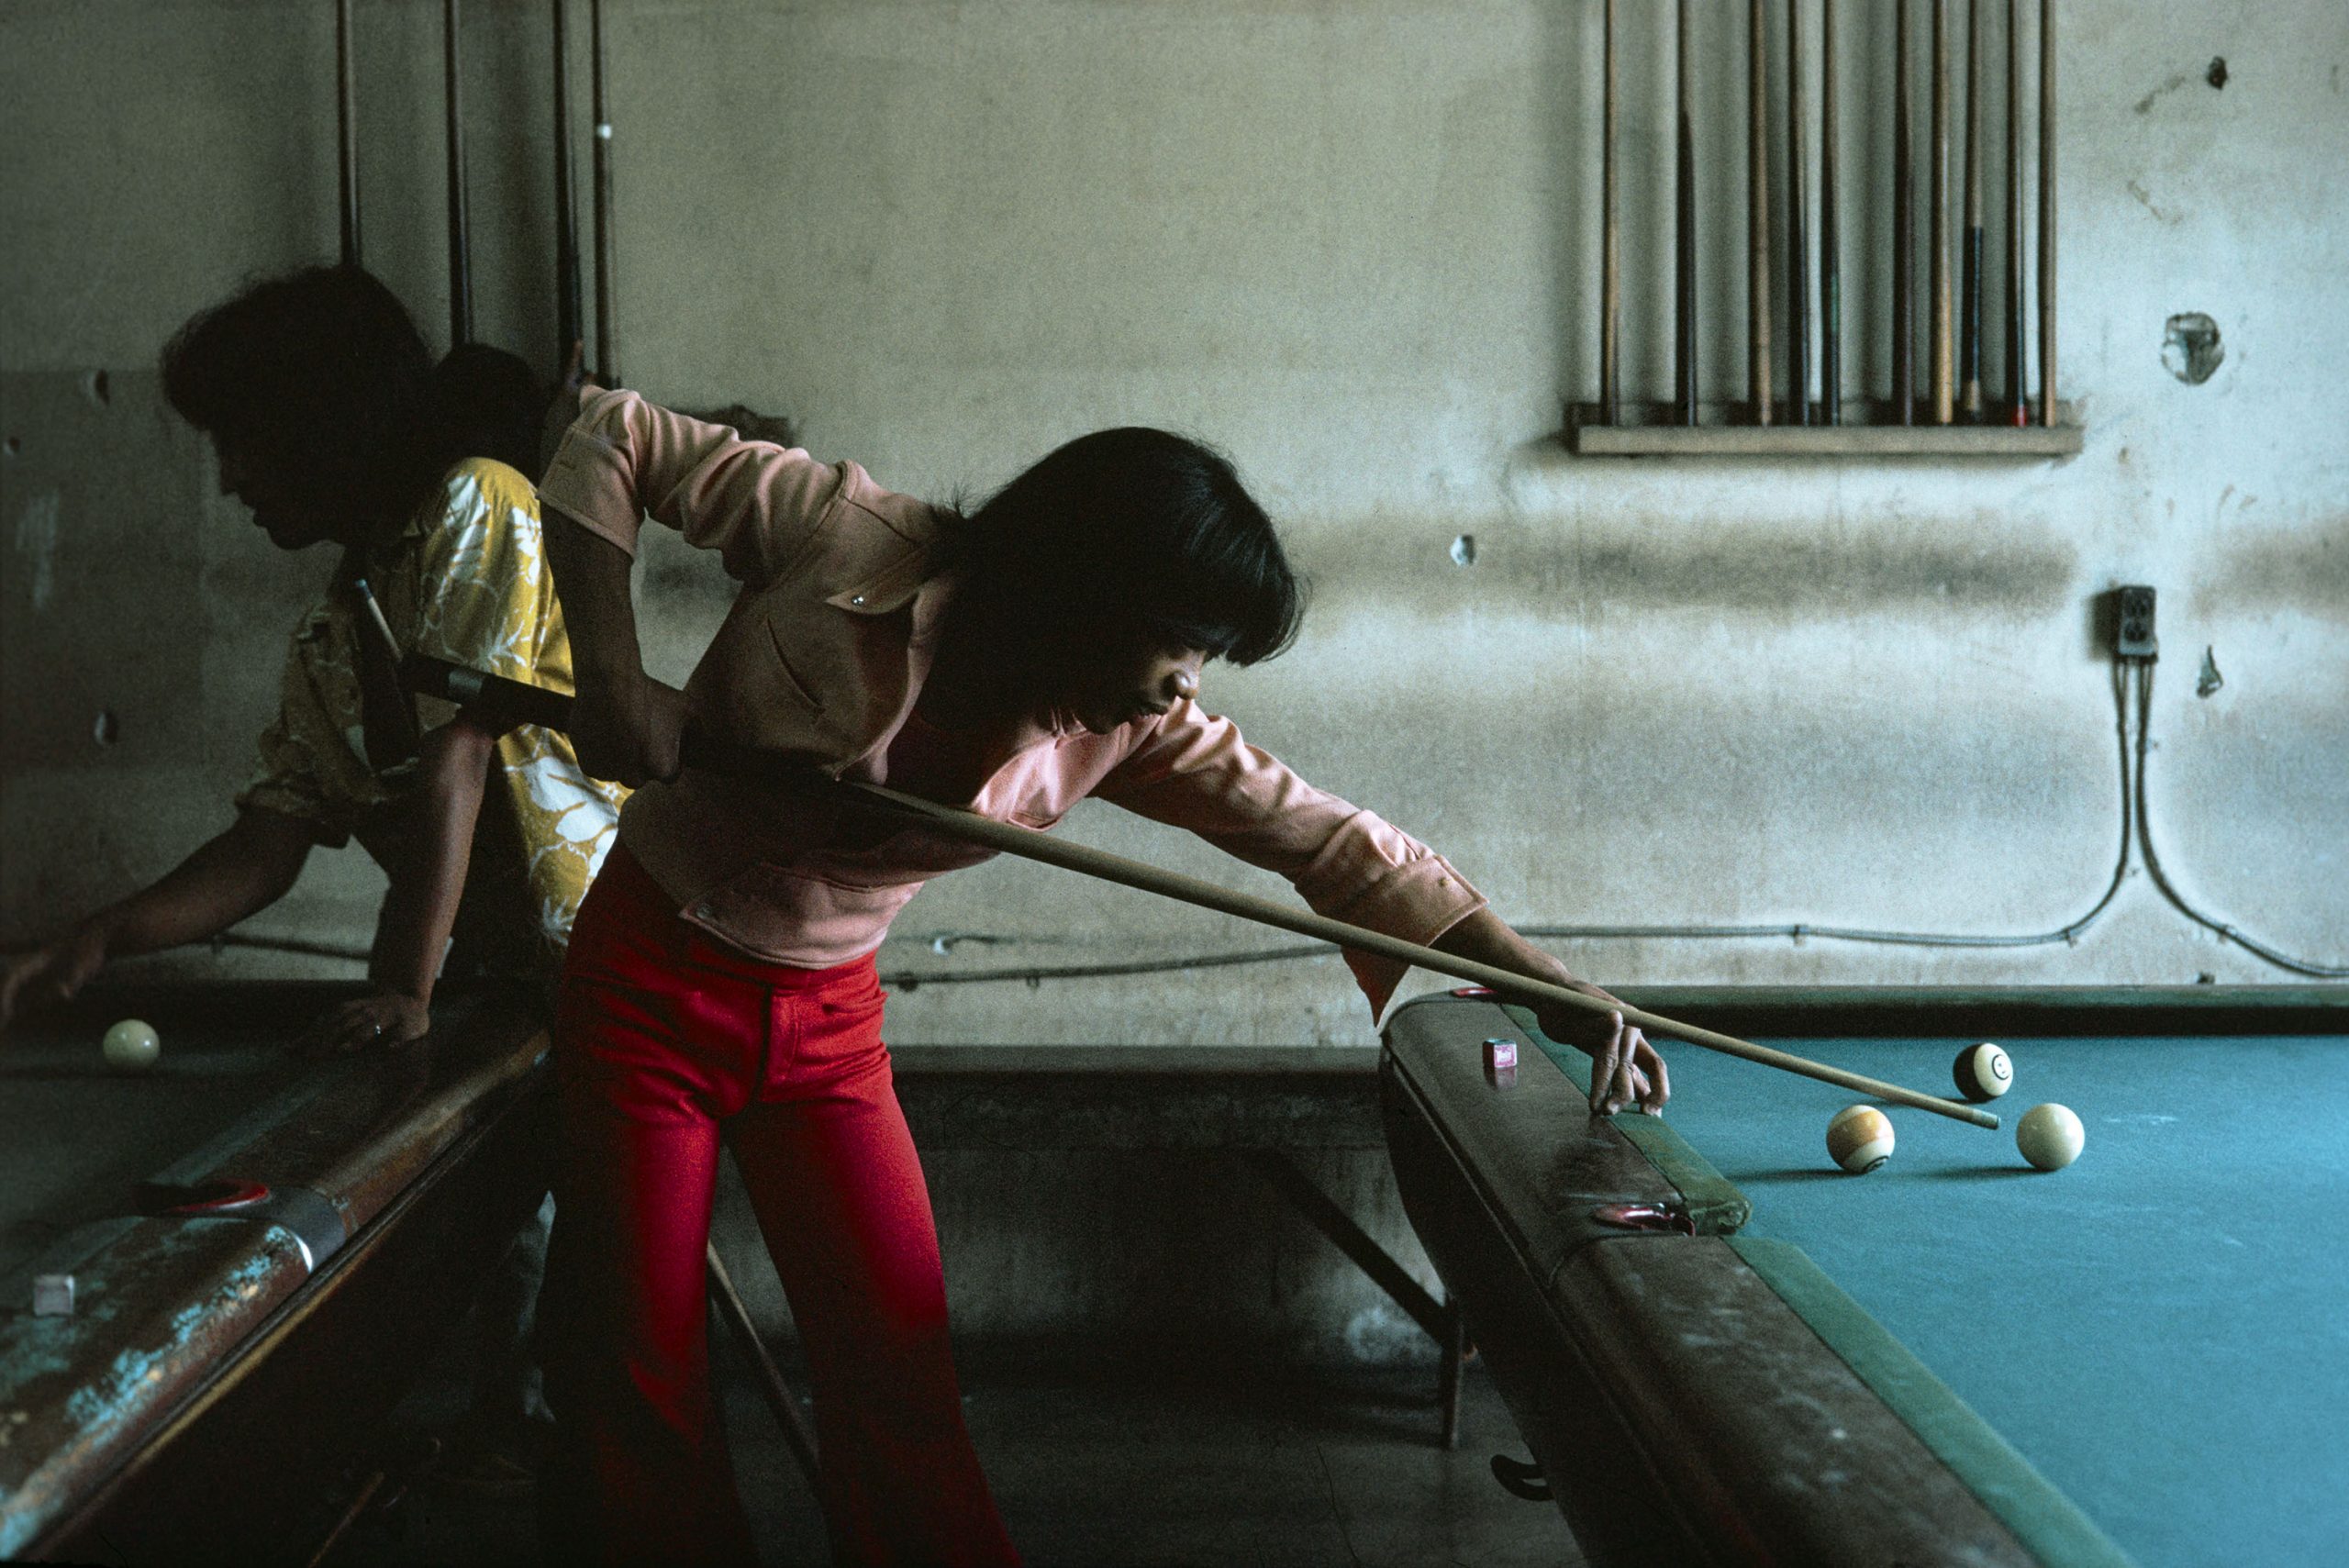 Pool Hall, Honolulu, 1976